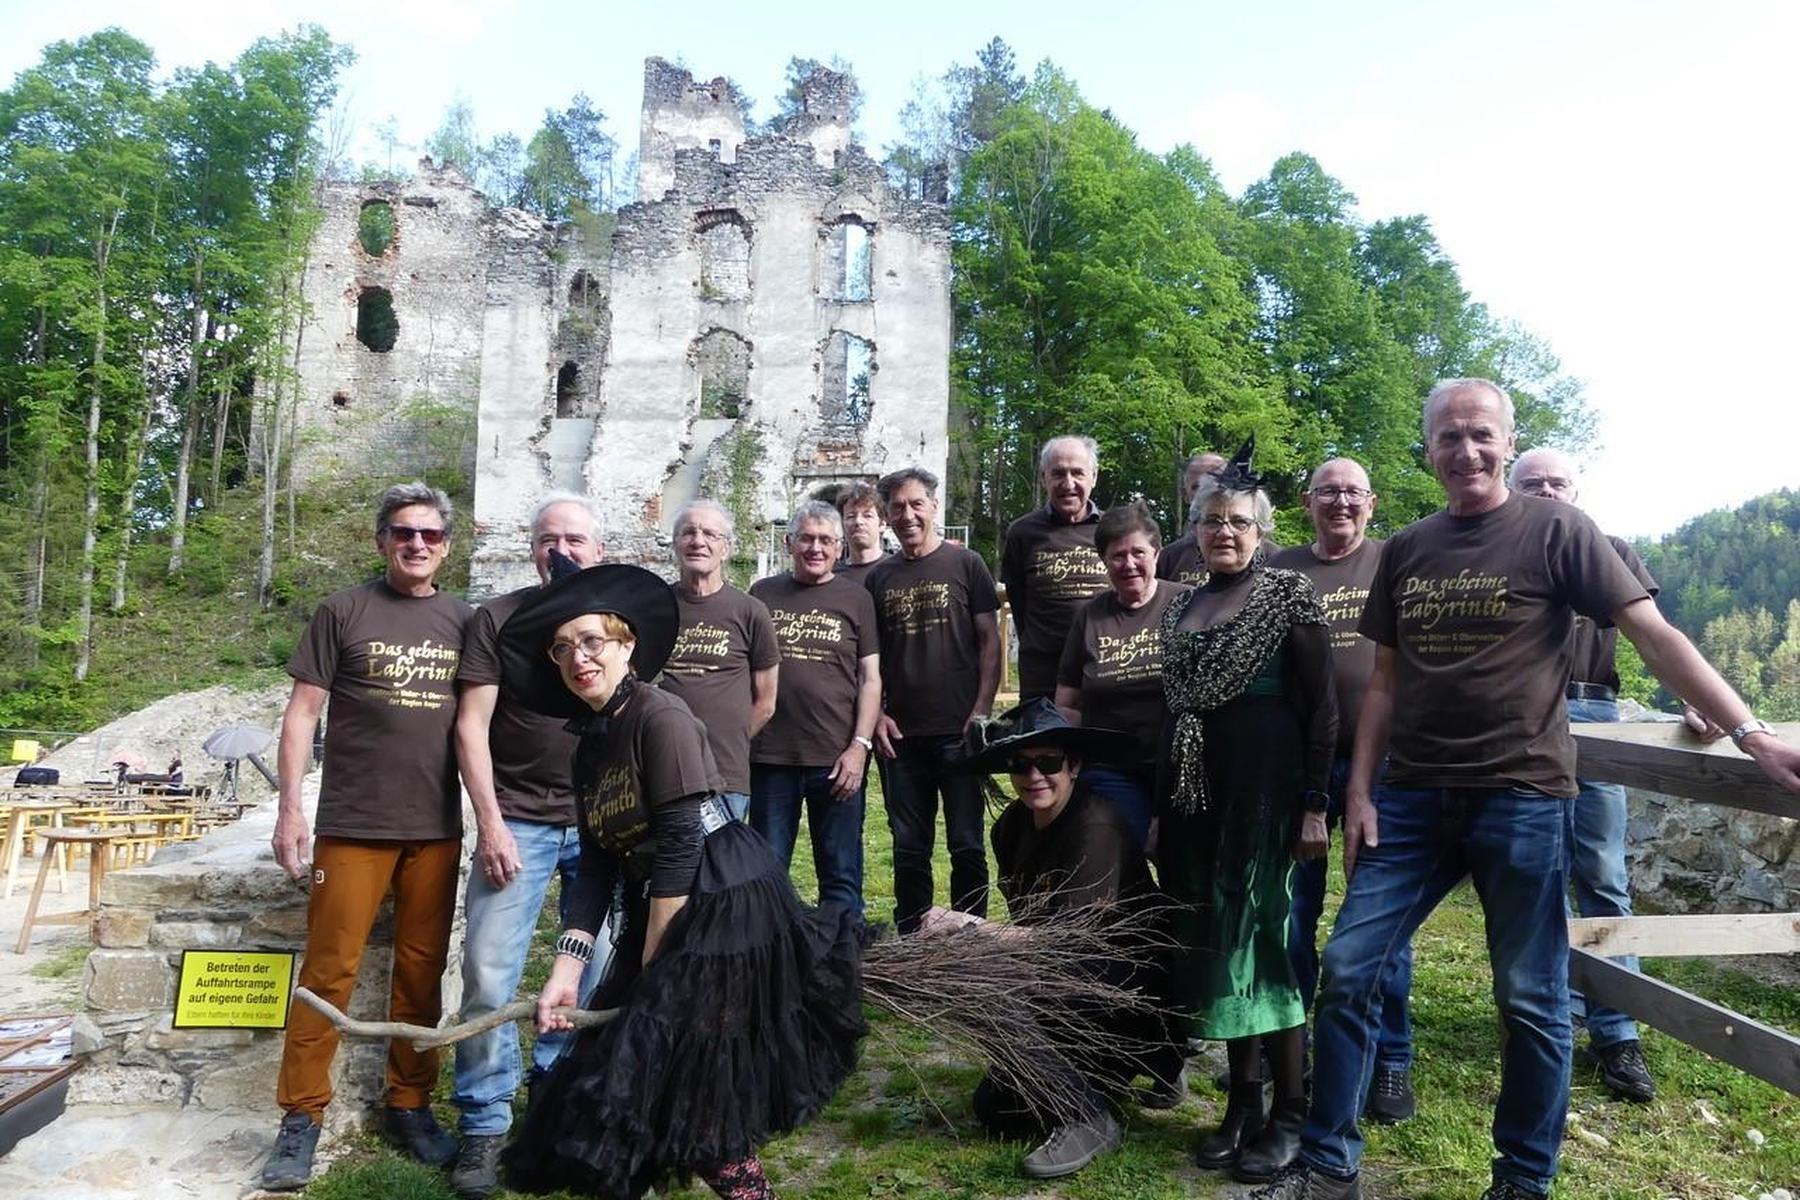 Tanz, Musik und pure Mystik: Bei der Burgruine Waxenegg kamen „Hexen“ zur Walpurgisnacht zusammen